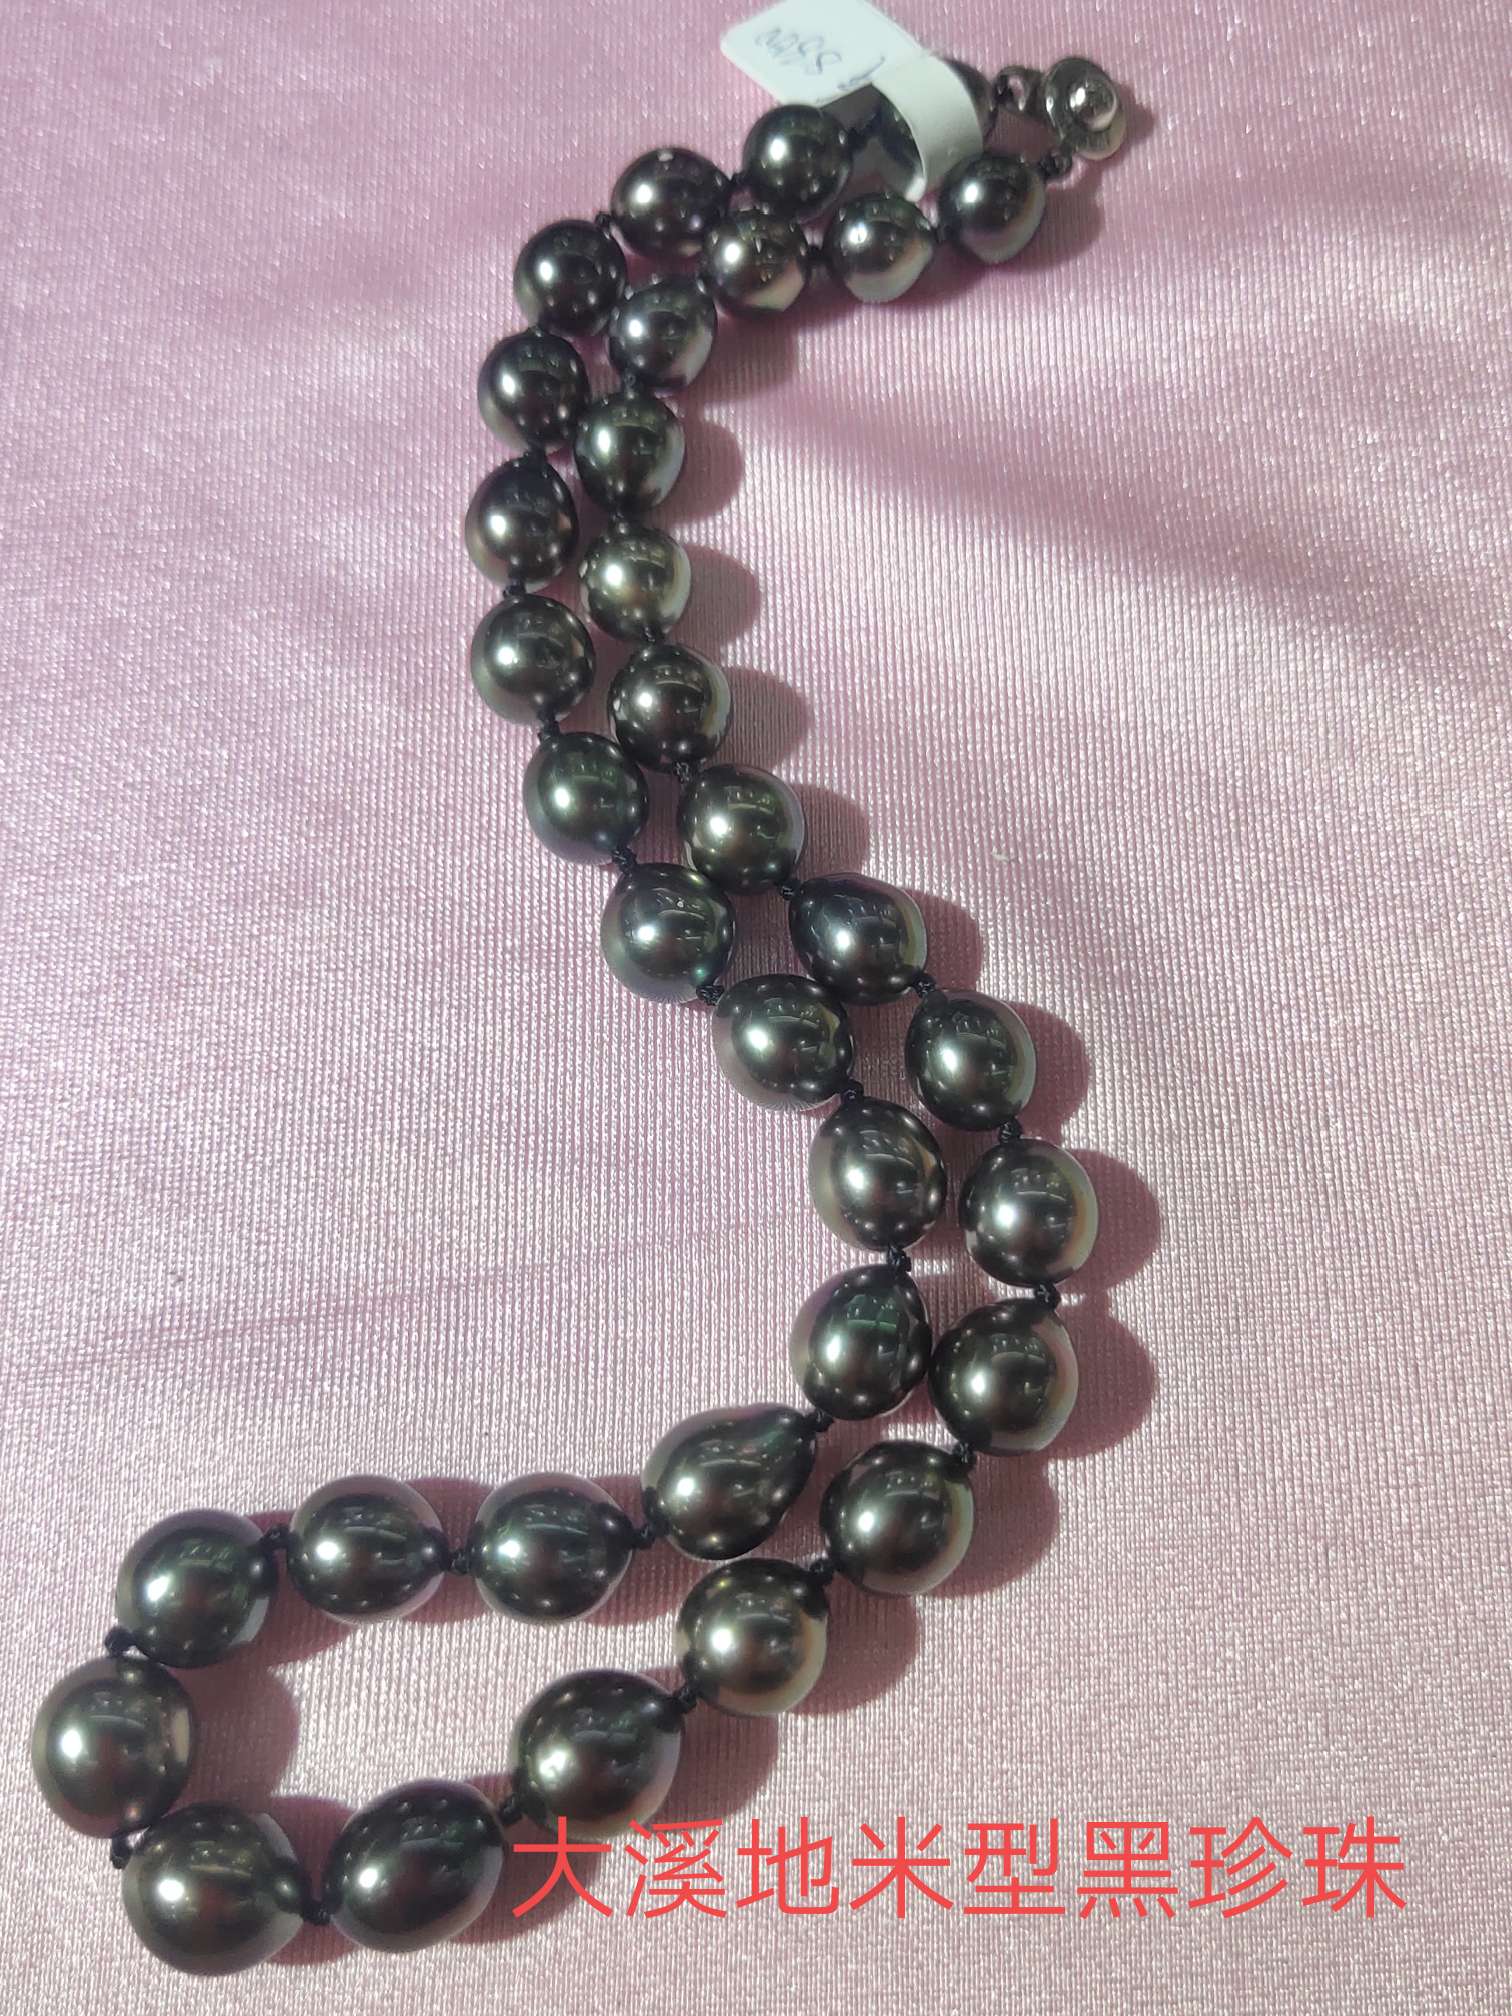 天然大溪地米型黑珍珠强光微瑕魅力十足可以收藏